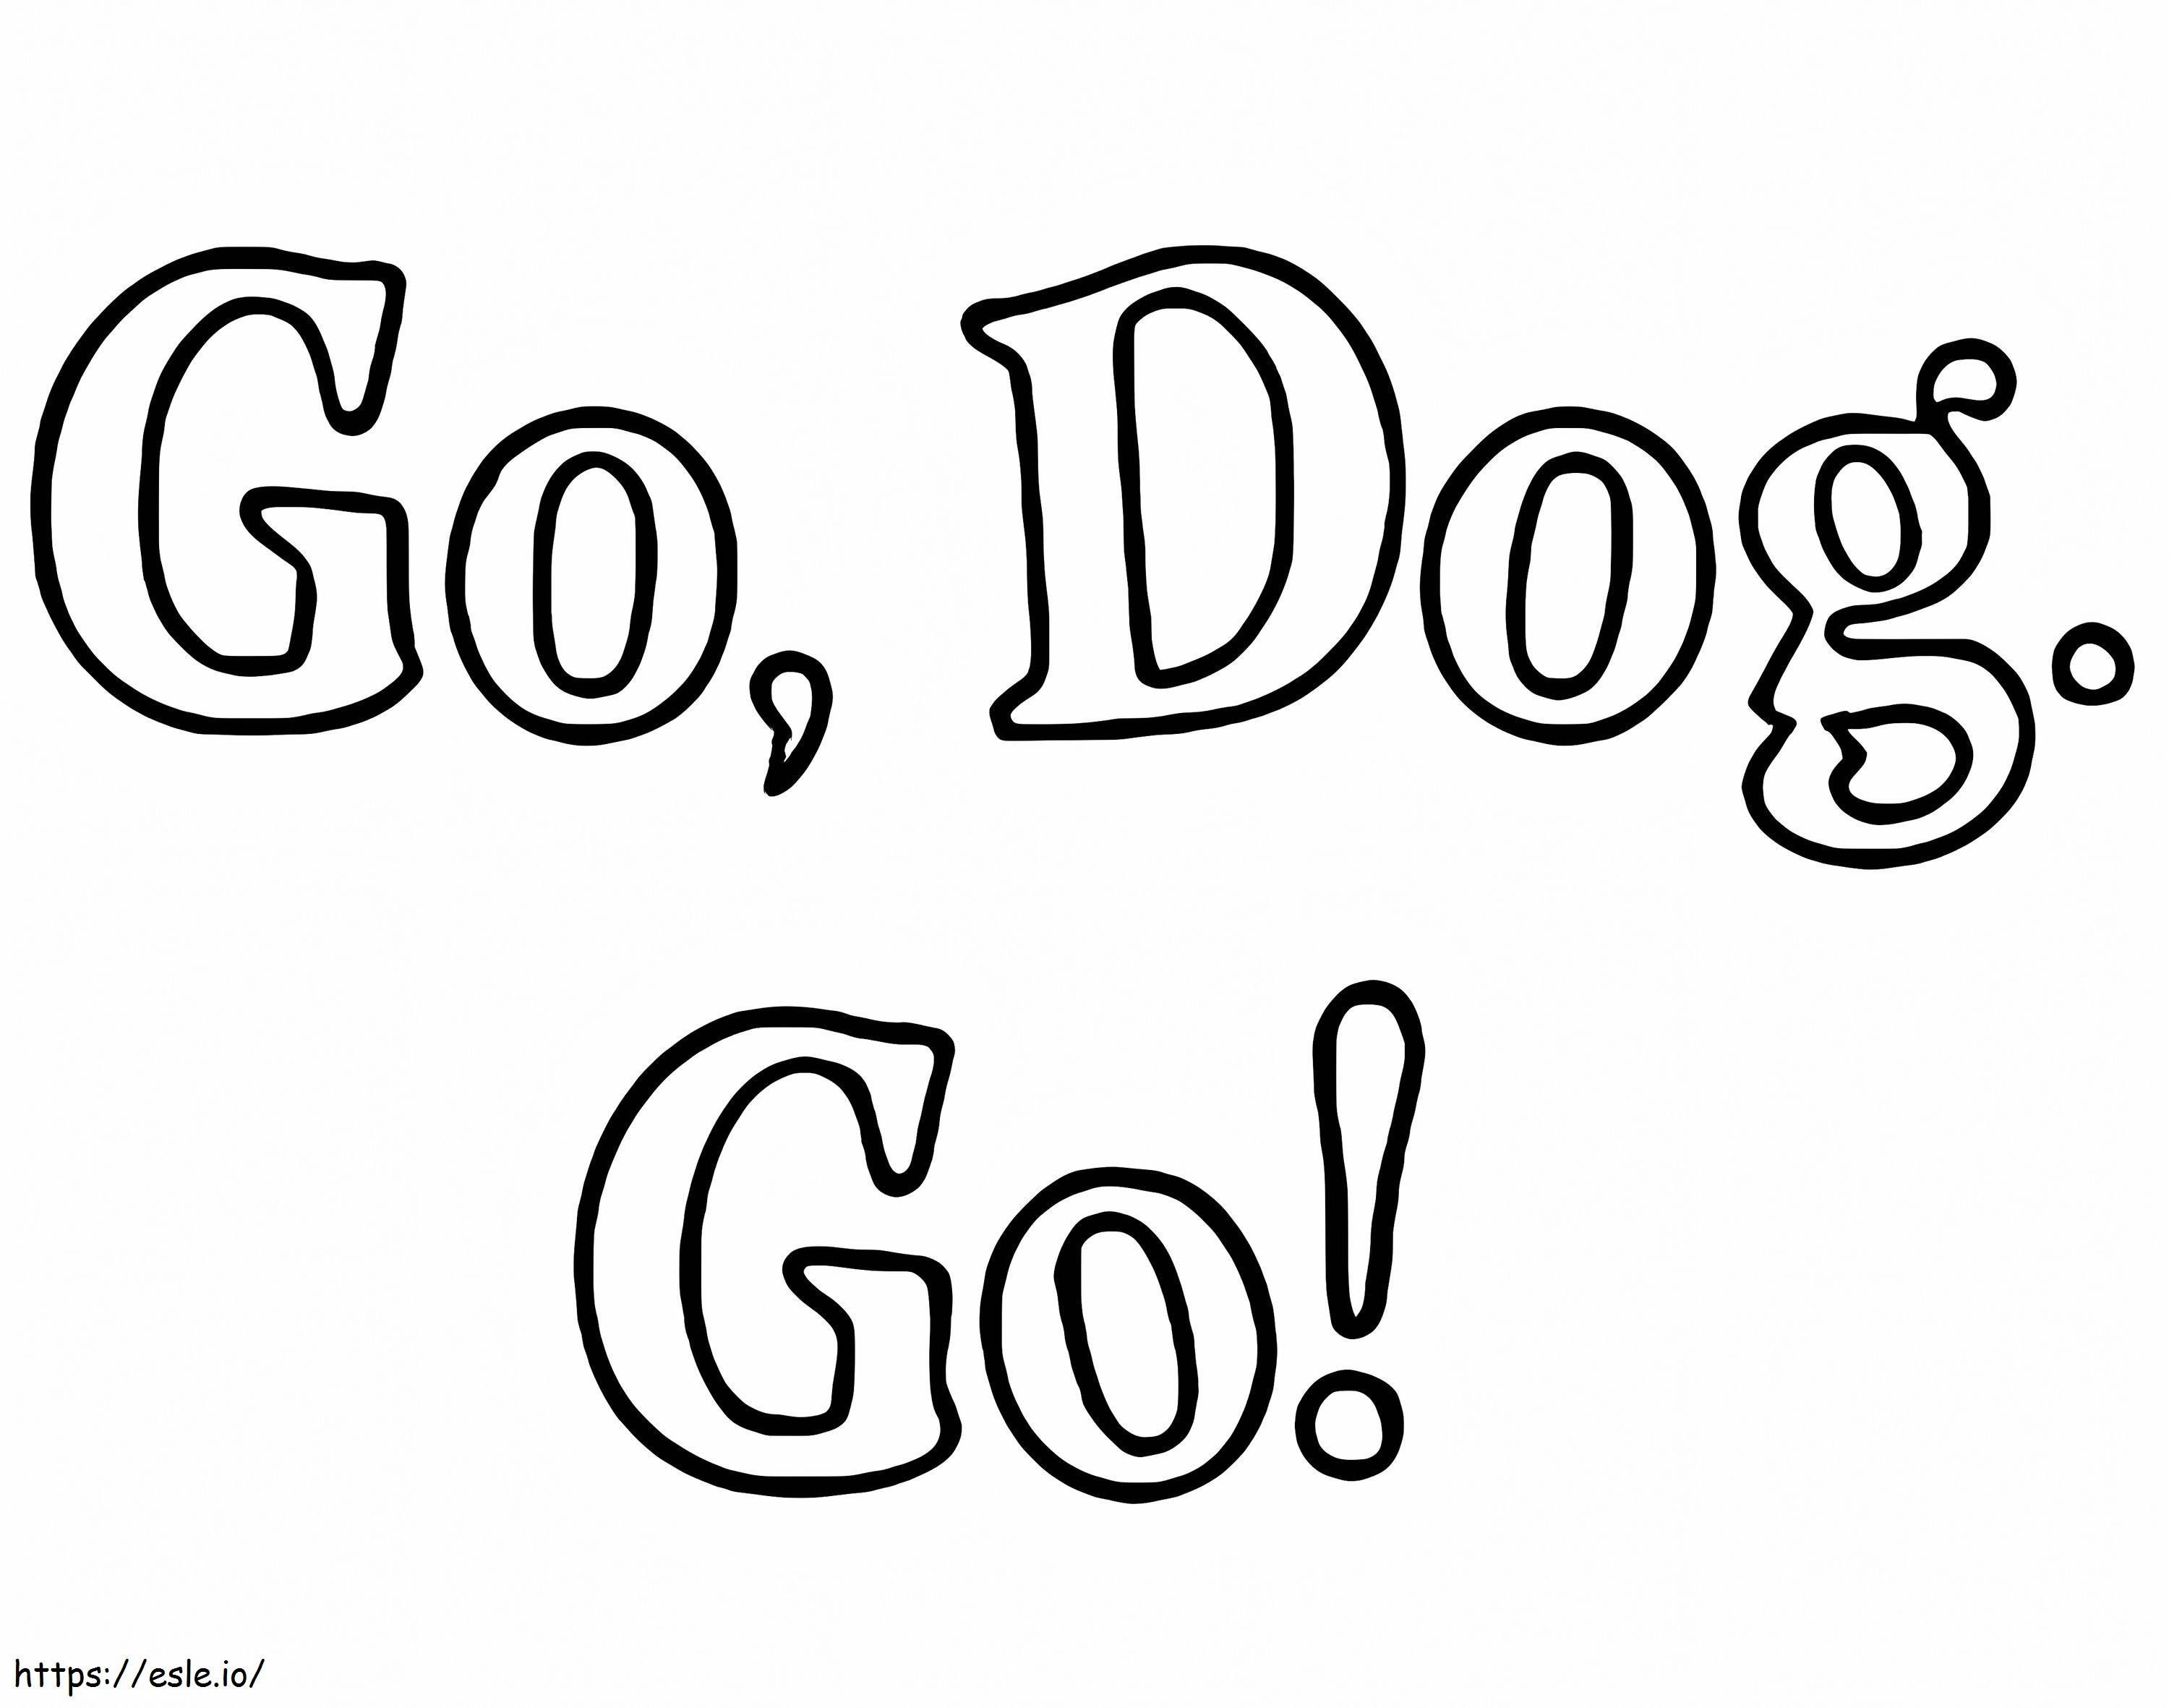 Go Dog Go-Logo ausmalbilder